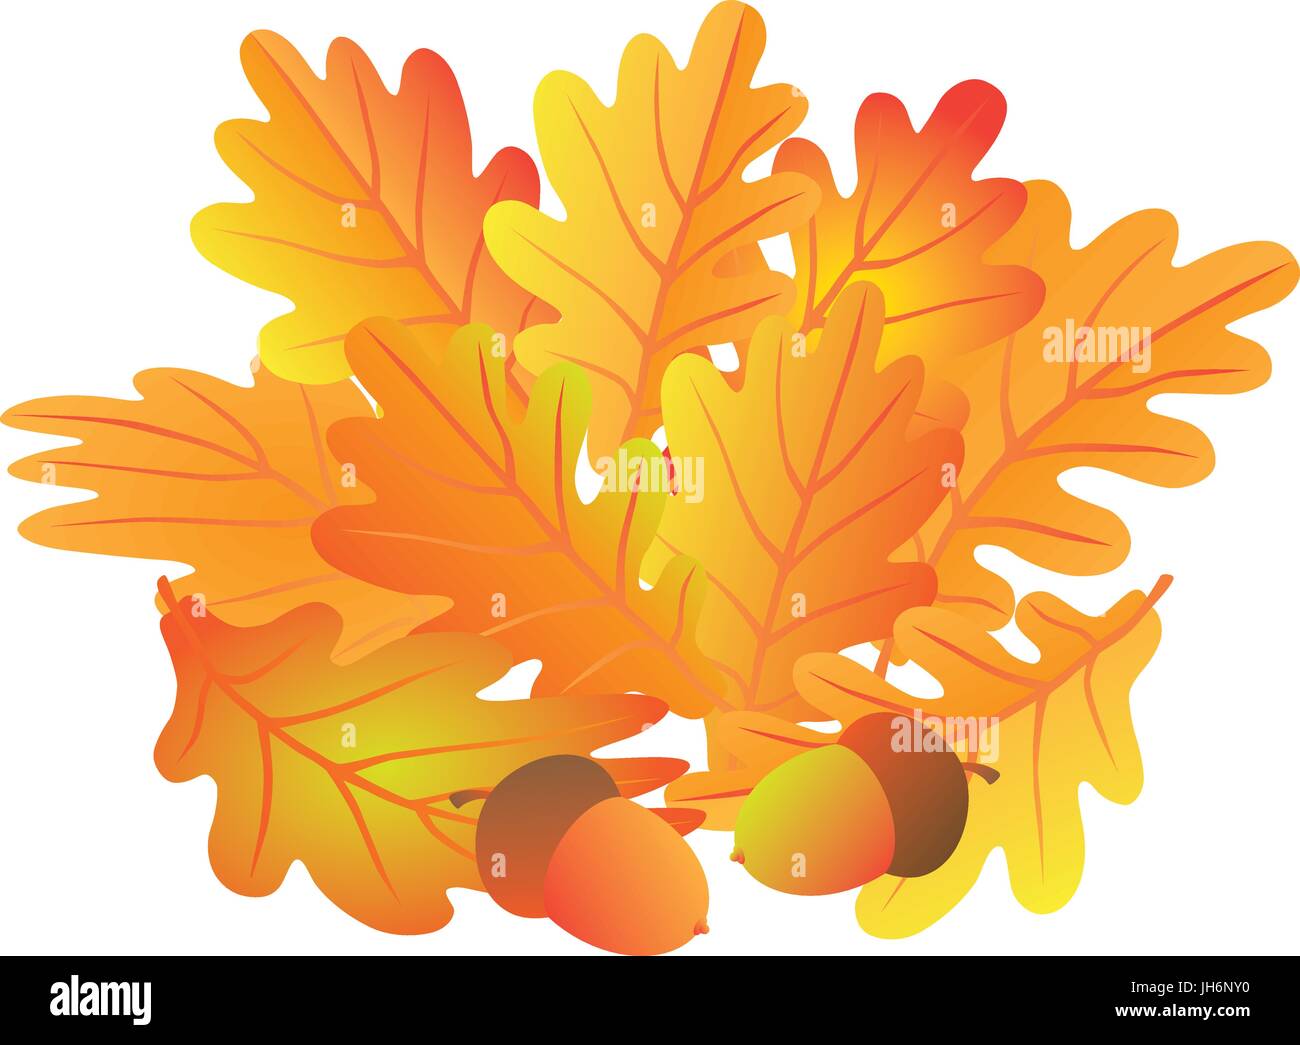 Eichenlaub und Eicheln in Herbstfarben isoliert auf weißem Hintergrund Farbe Abbildung Stock Vektor